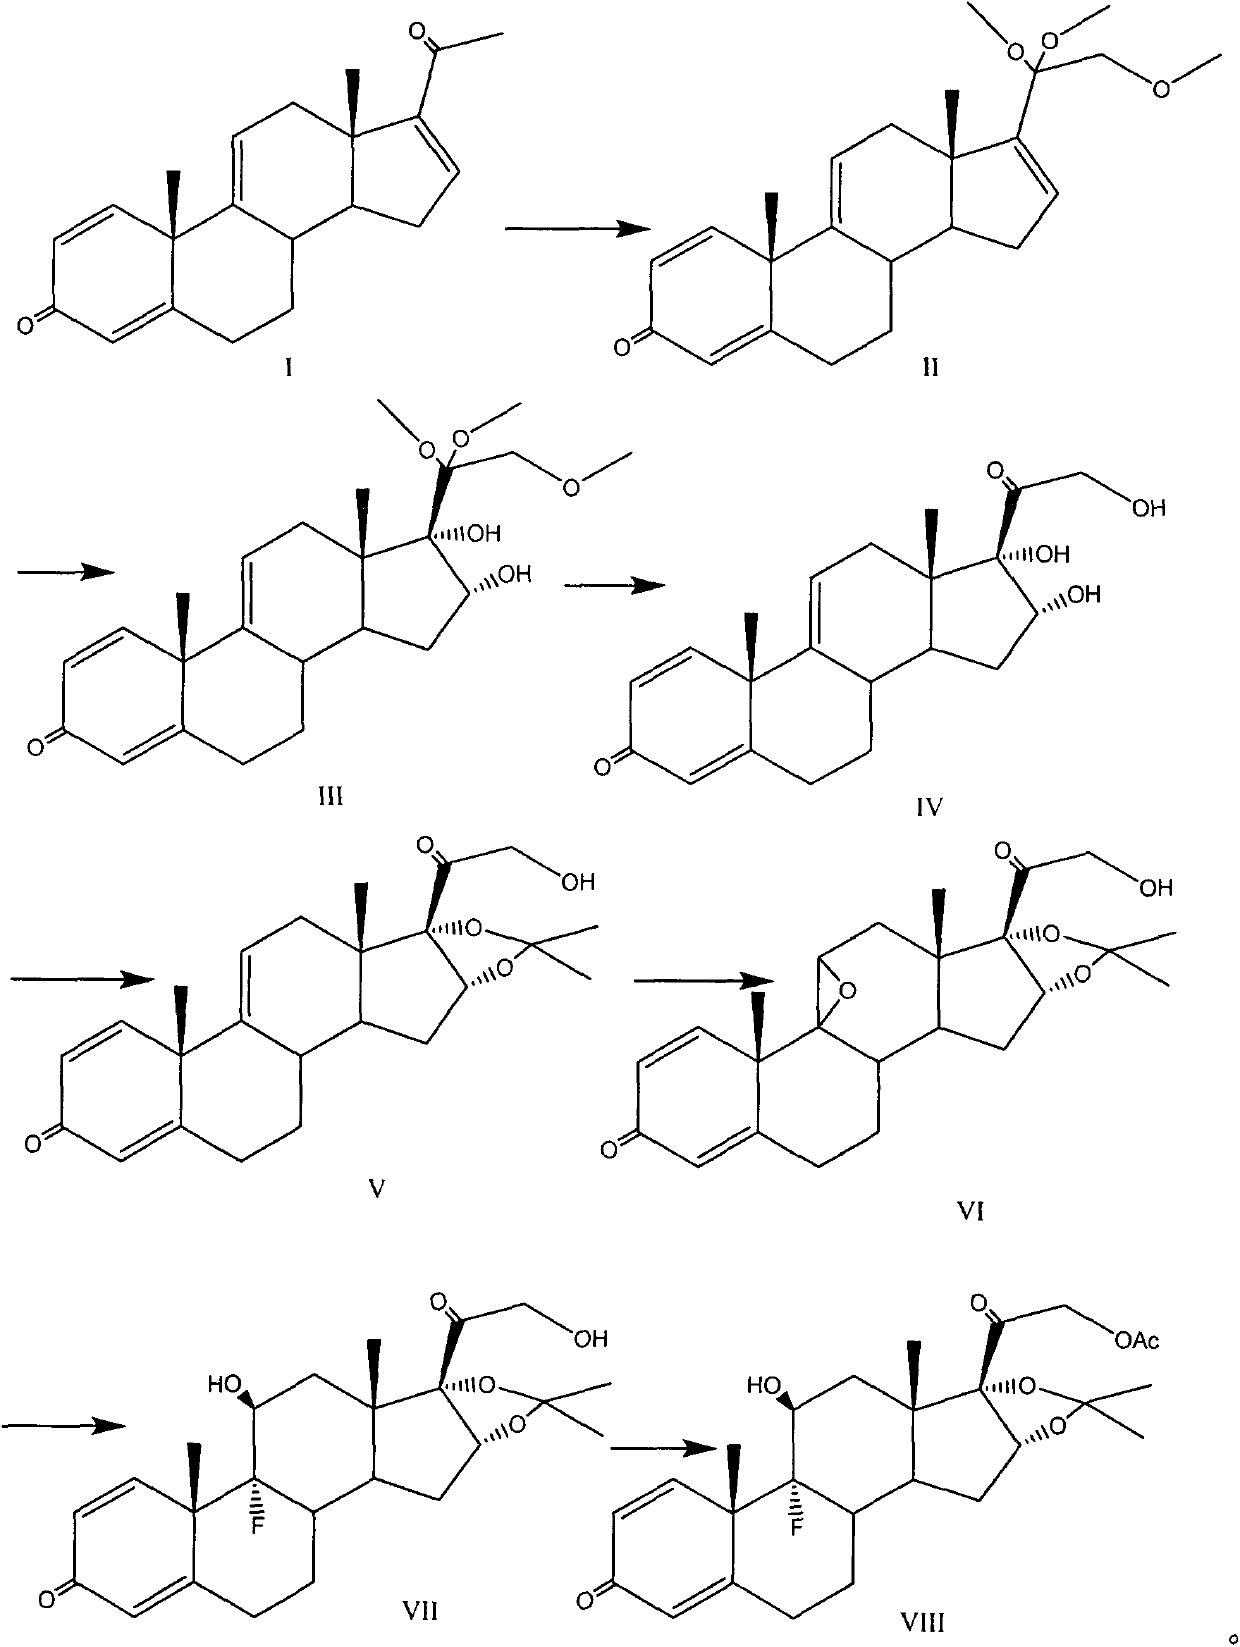 Triamcinolone acetonide acetate preparation method